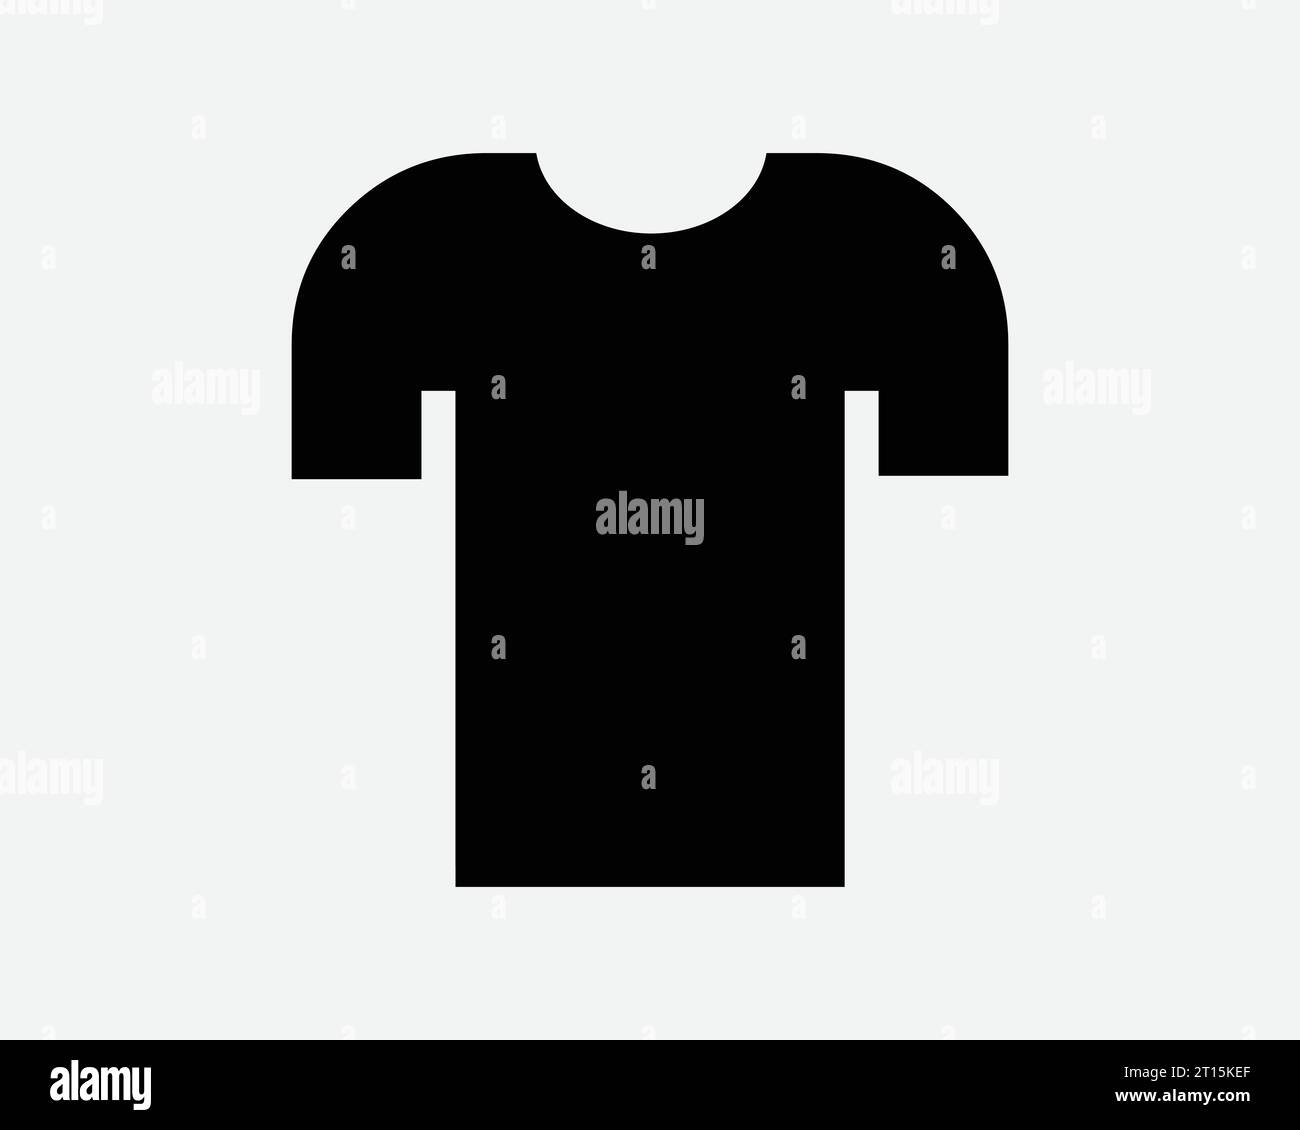 Maglietta semplice semplice T-shirt Tee Design Fashion Retail T-shirt maniche corte abbigliamento tessile Nero bianco forma icona simbolo EPS Vector Illustrazione Vettoriale